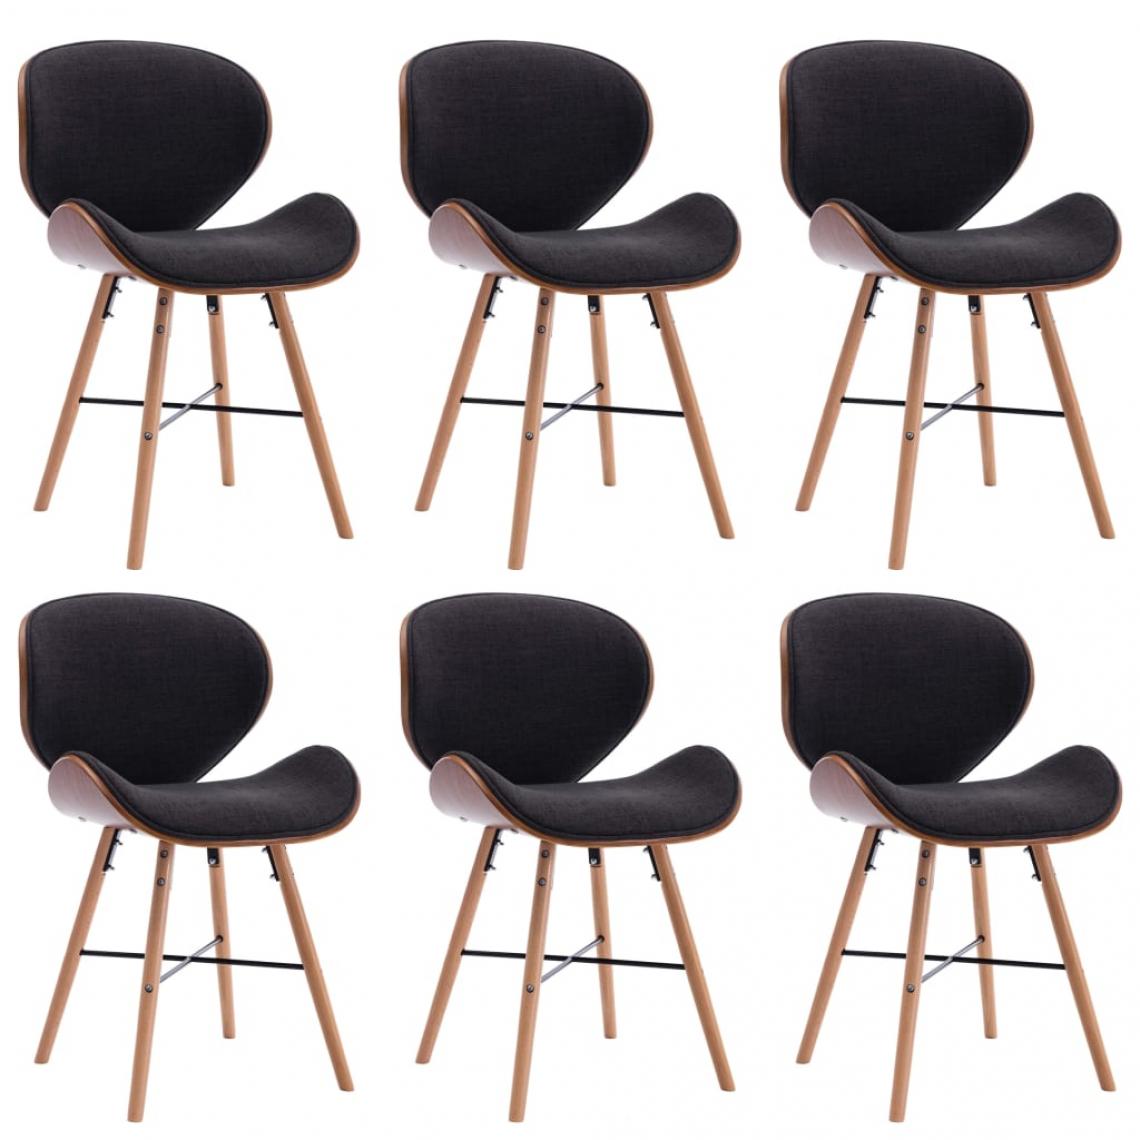 Decoshop26 - Lot de 6 chaises de salle à manger cuisine design moderne tissu gris foncé et bois courbé CDS022464 - Chaises